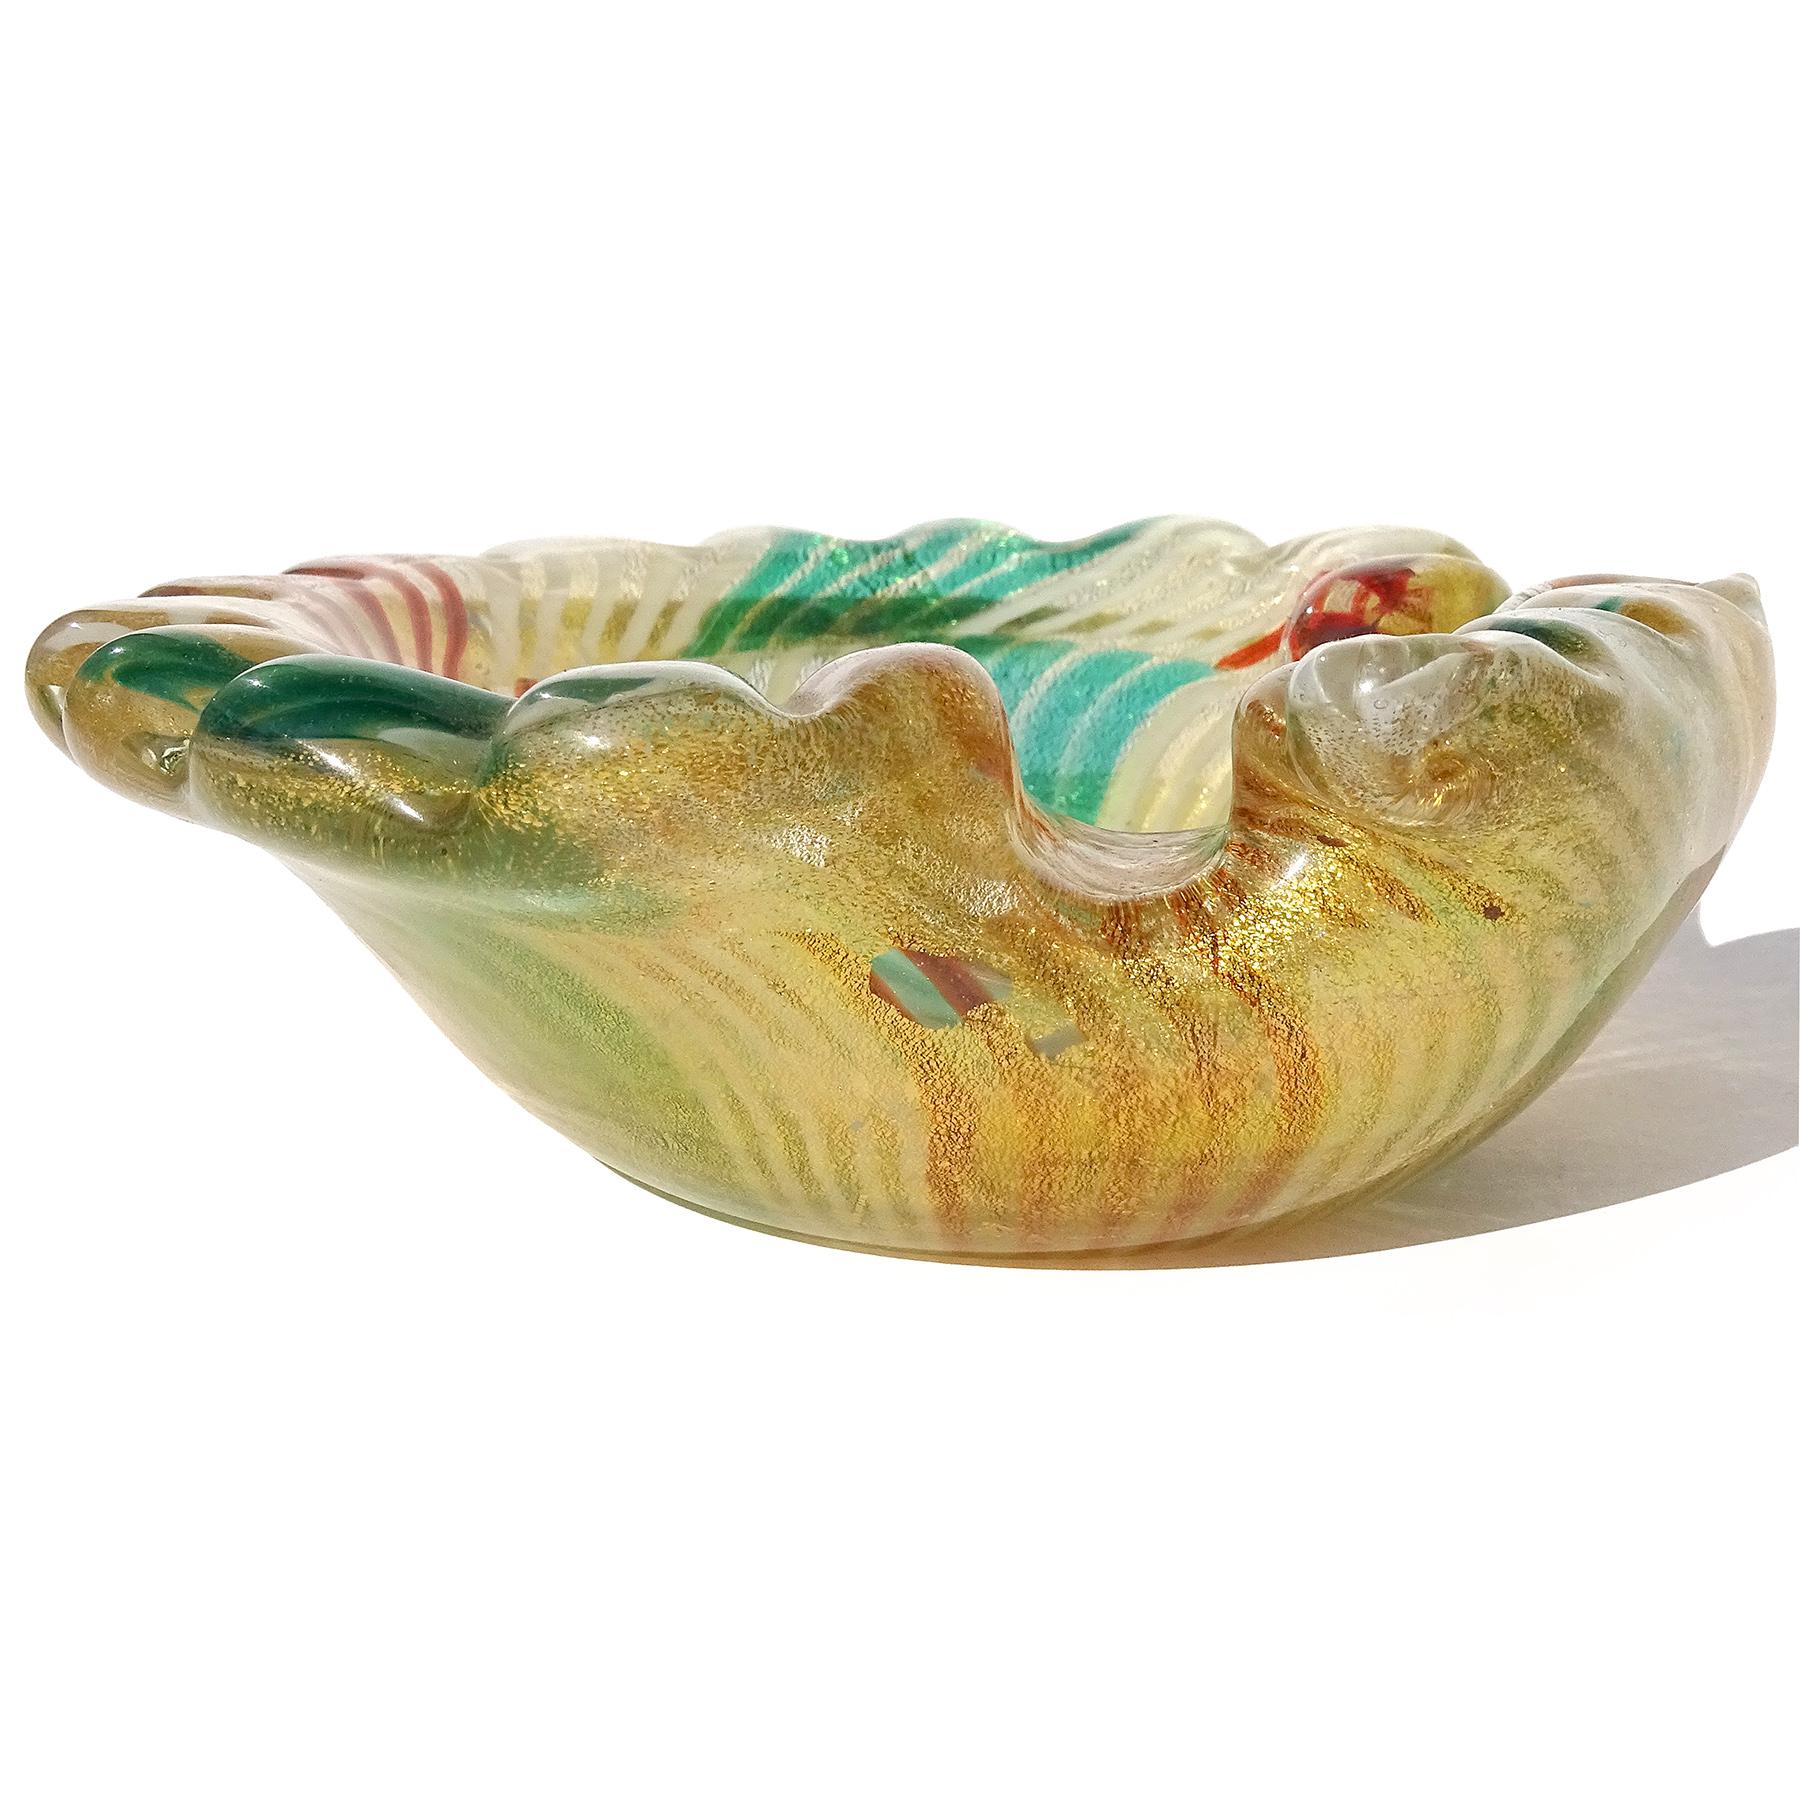 Magnifique bol vintage en verre d'art italien soufflé à la main de Murano, vert, blanc et rouge-orange, avec des morceaux de mosaïque et des mouchetures d'or, en forme d'éventail de conque / coquillage. Le motif du bol est constitué d'une alternance